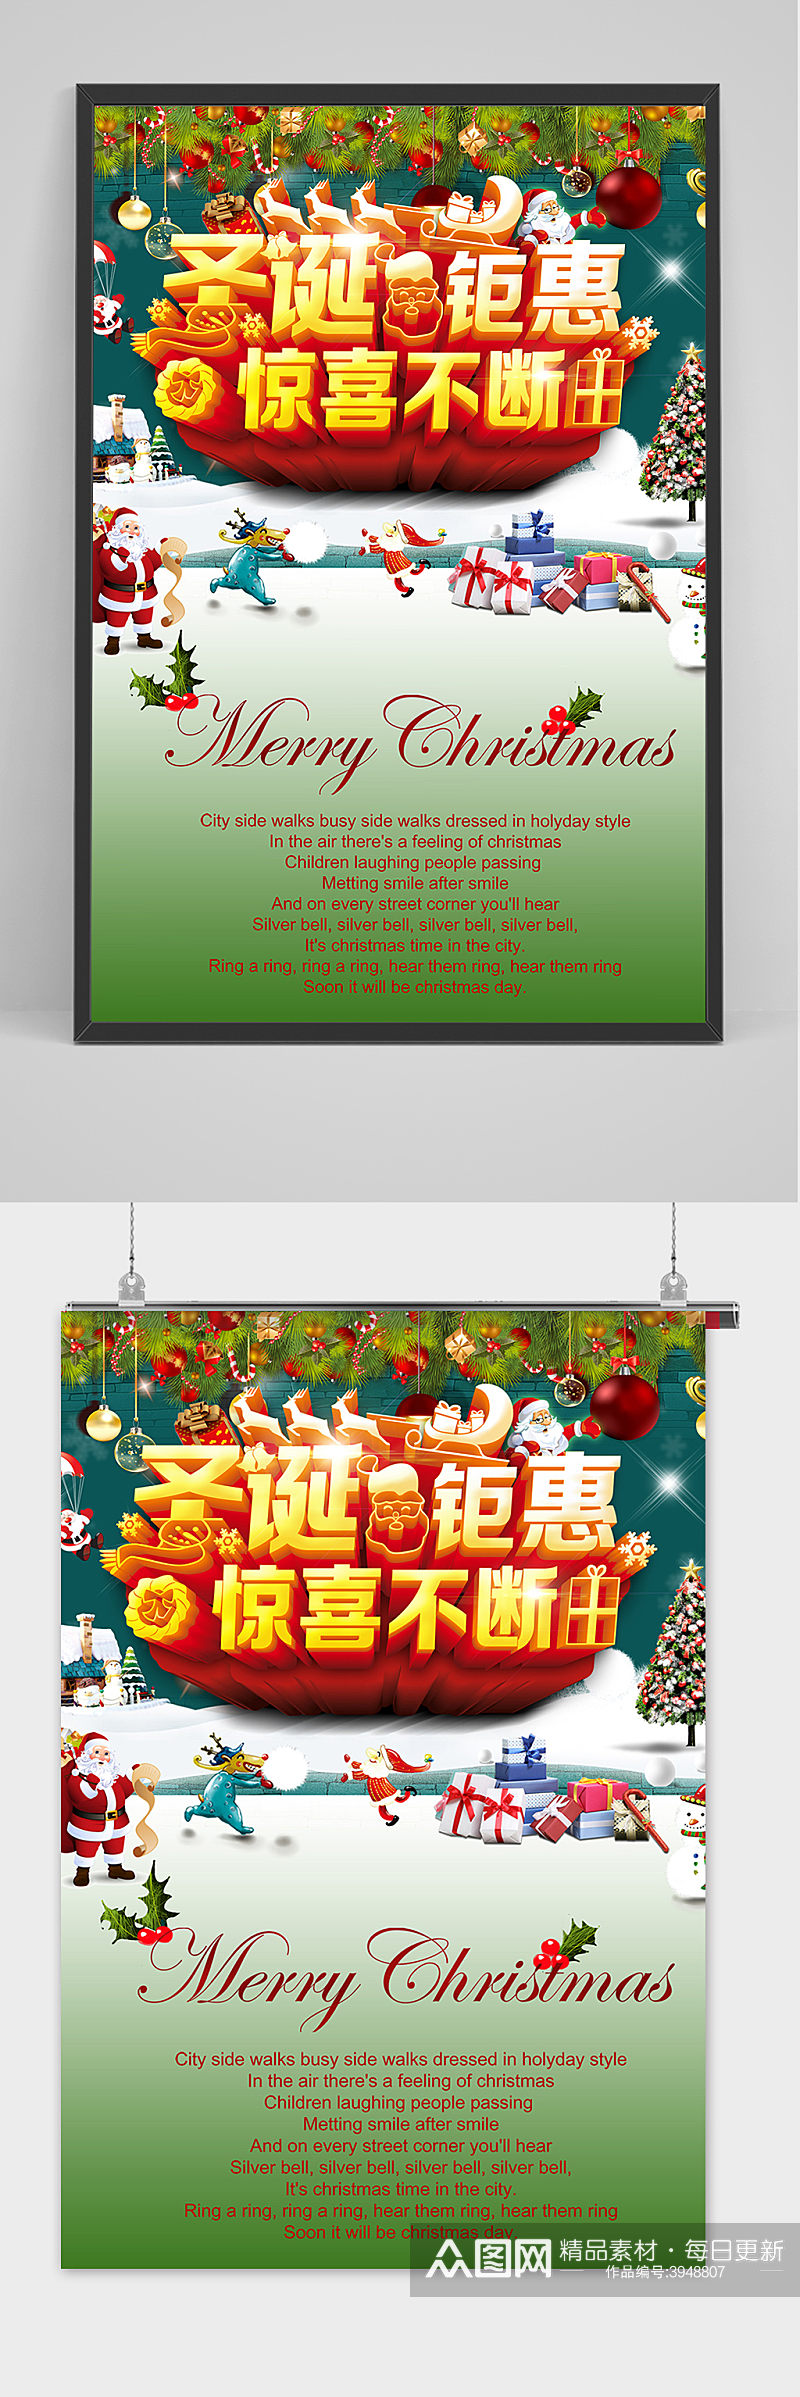 清新圣诞节快乐宣传海报素材